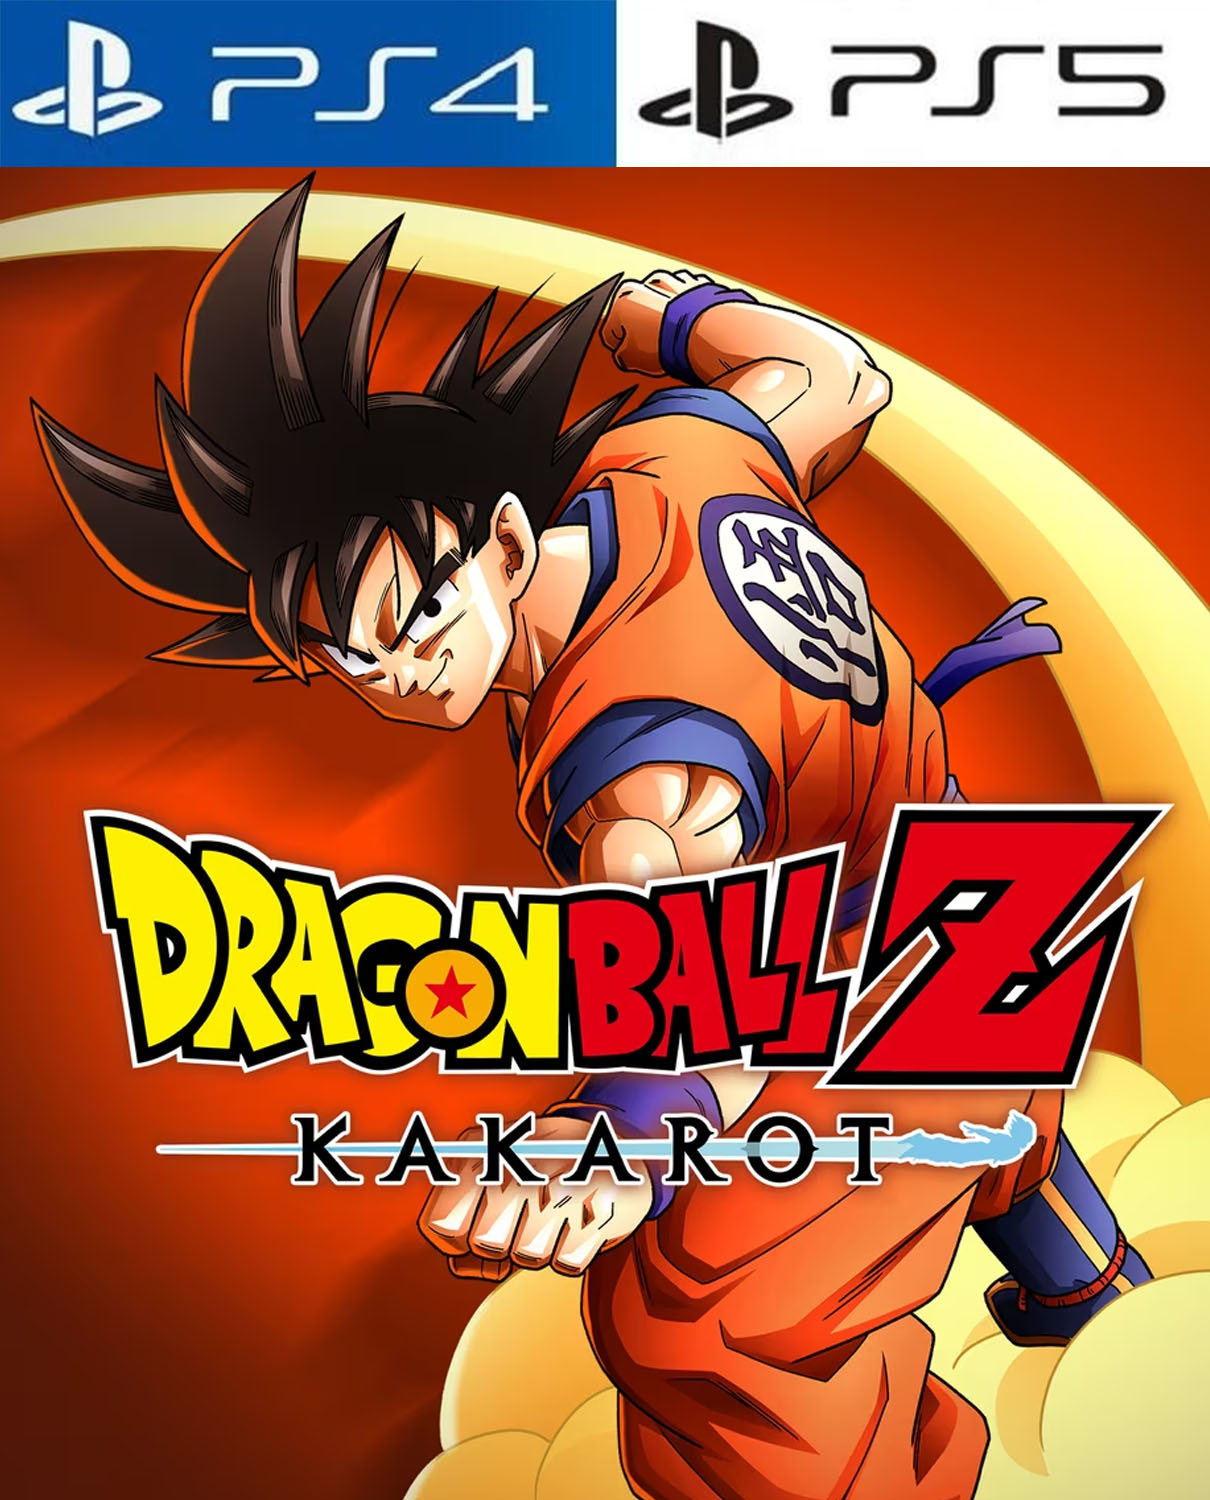 Jogamos Dragon Ball Z: Kakarot e ele é diferente de todos os games